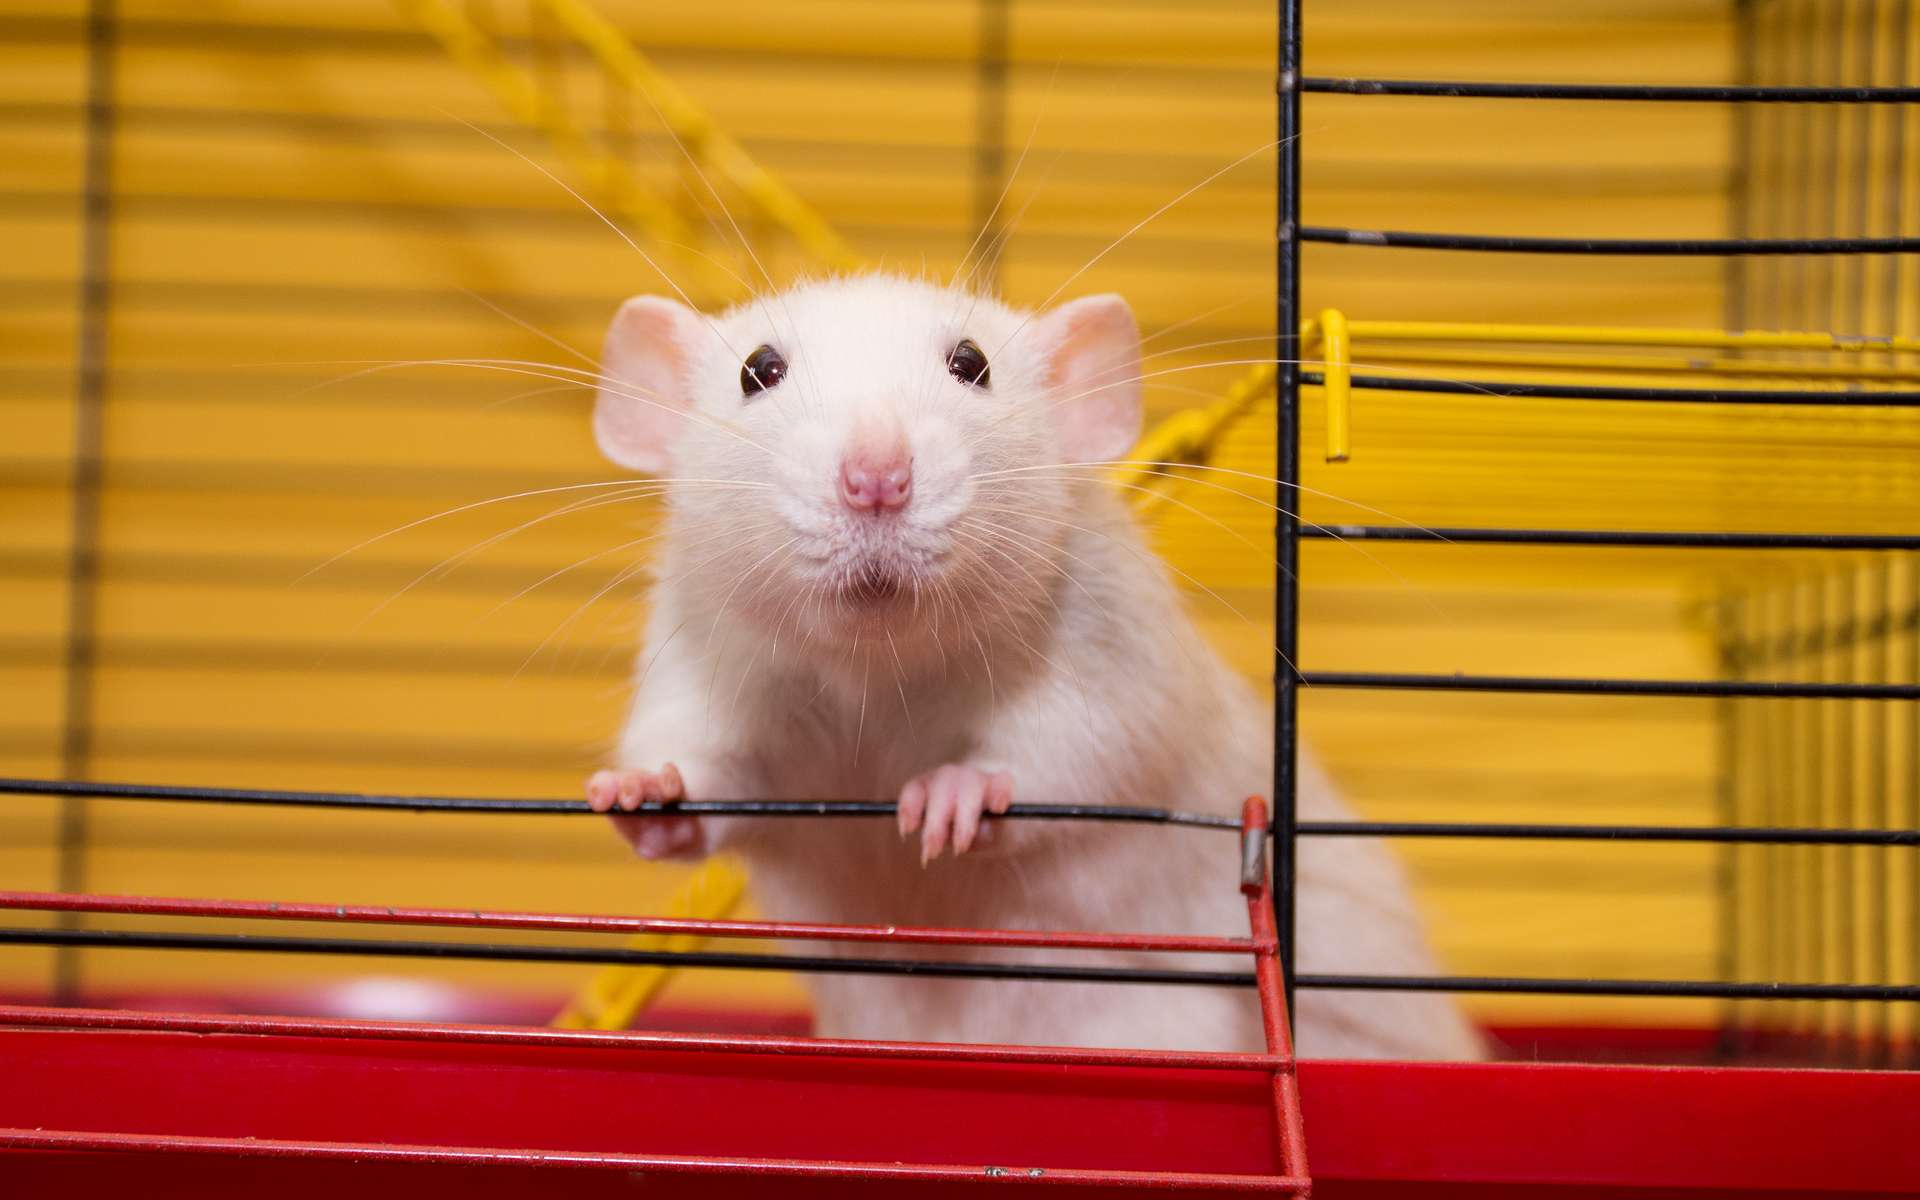 Comment des scientifiques ont-ils appris à des rats à conduire ?